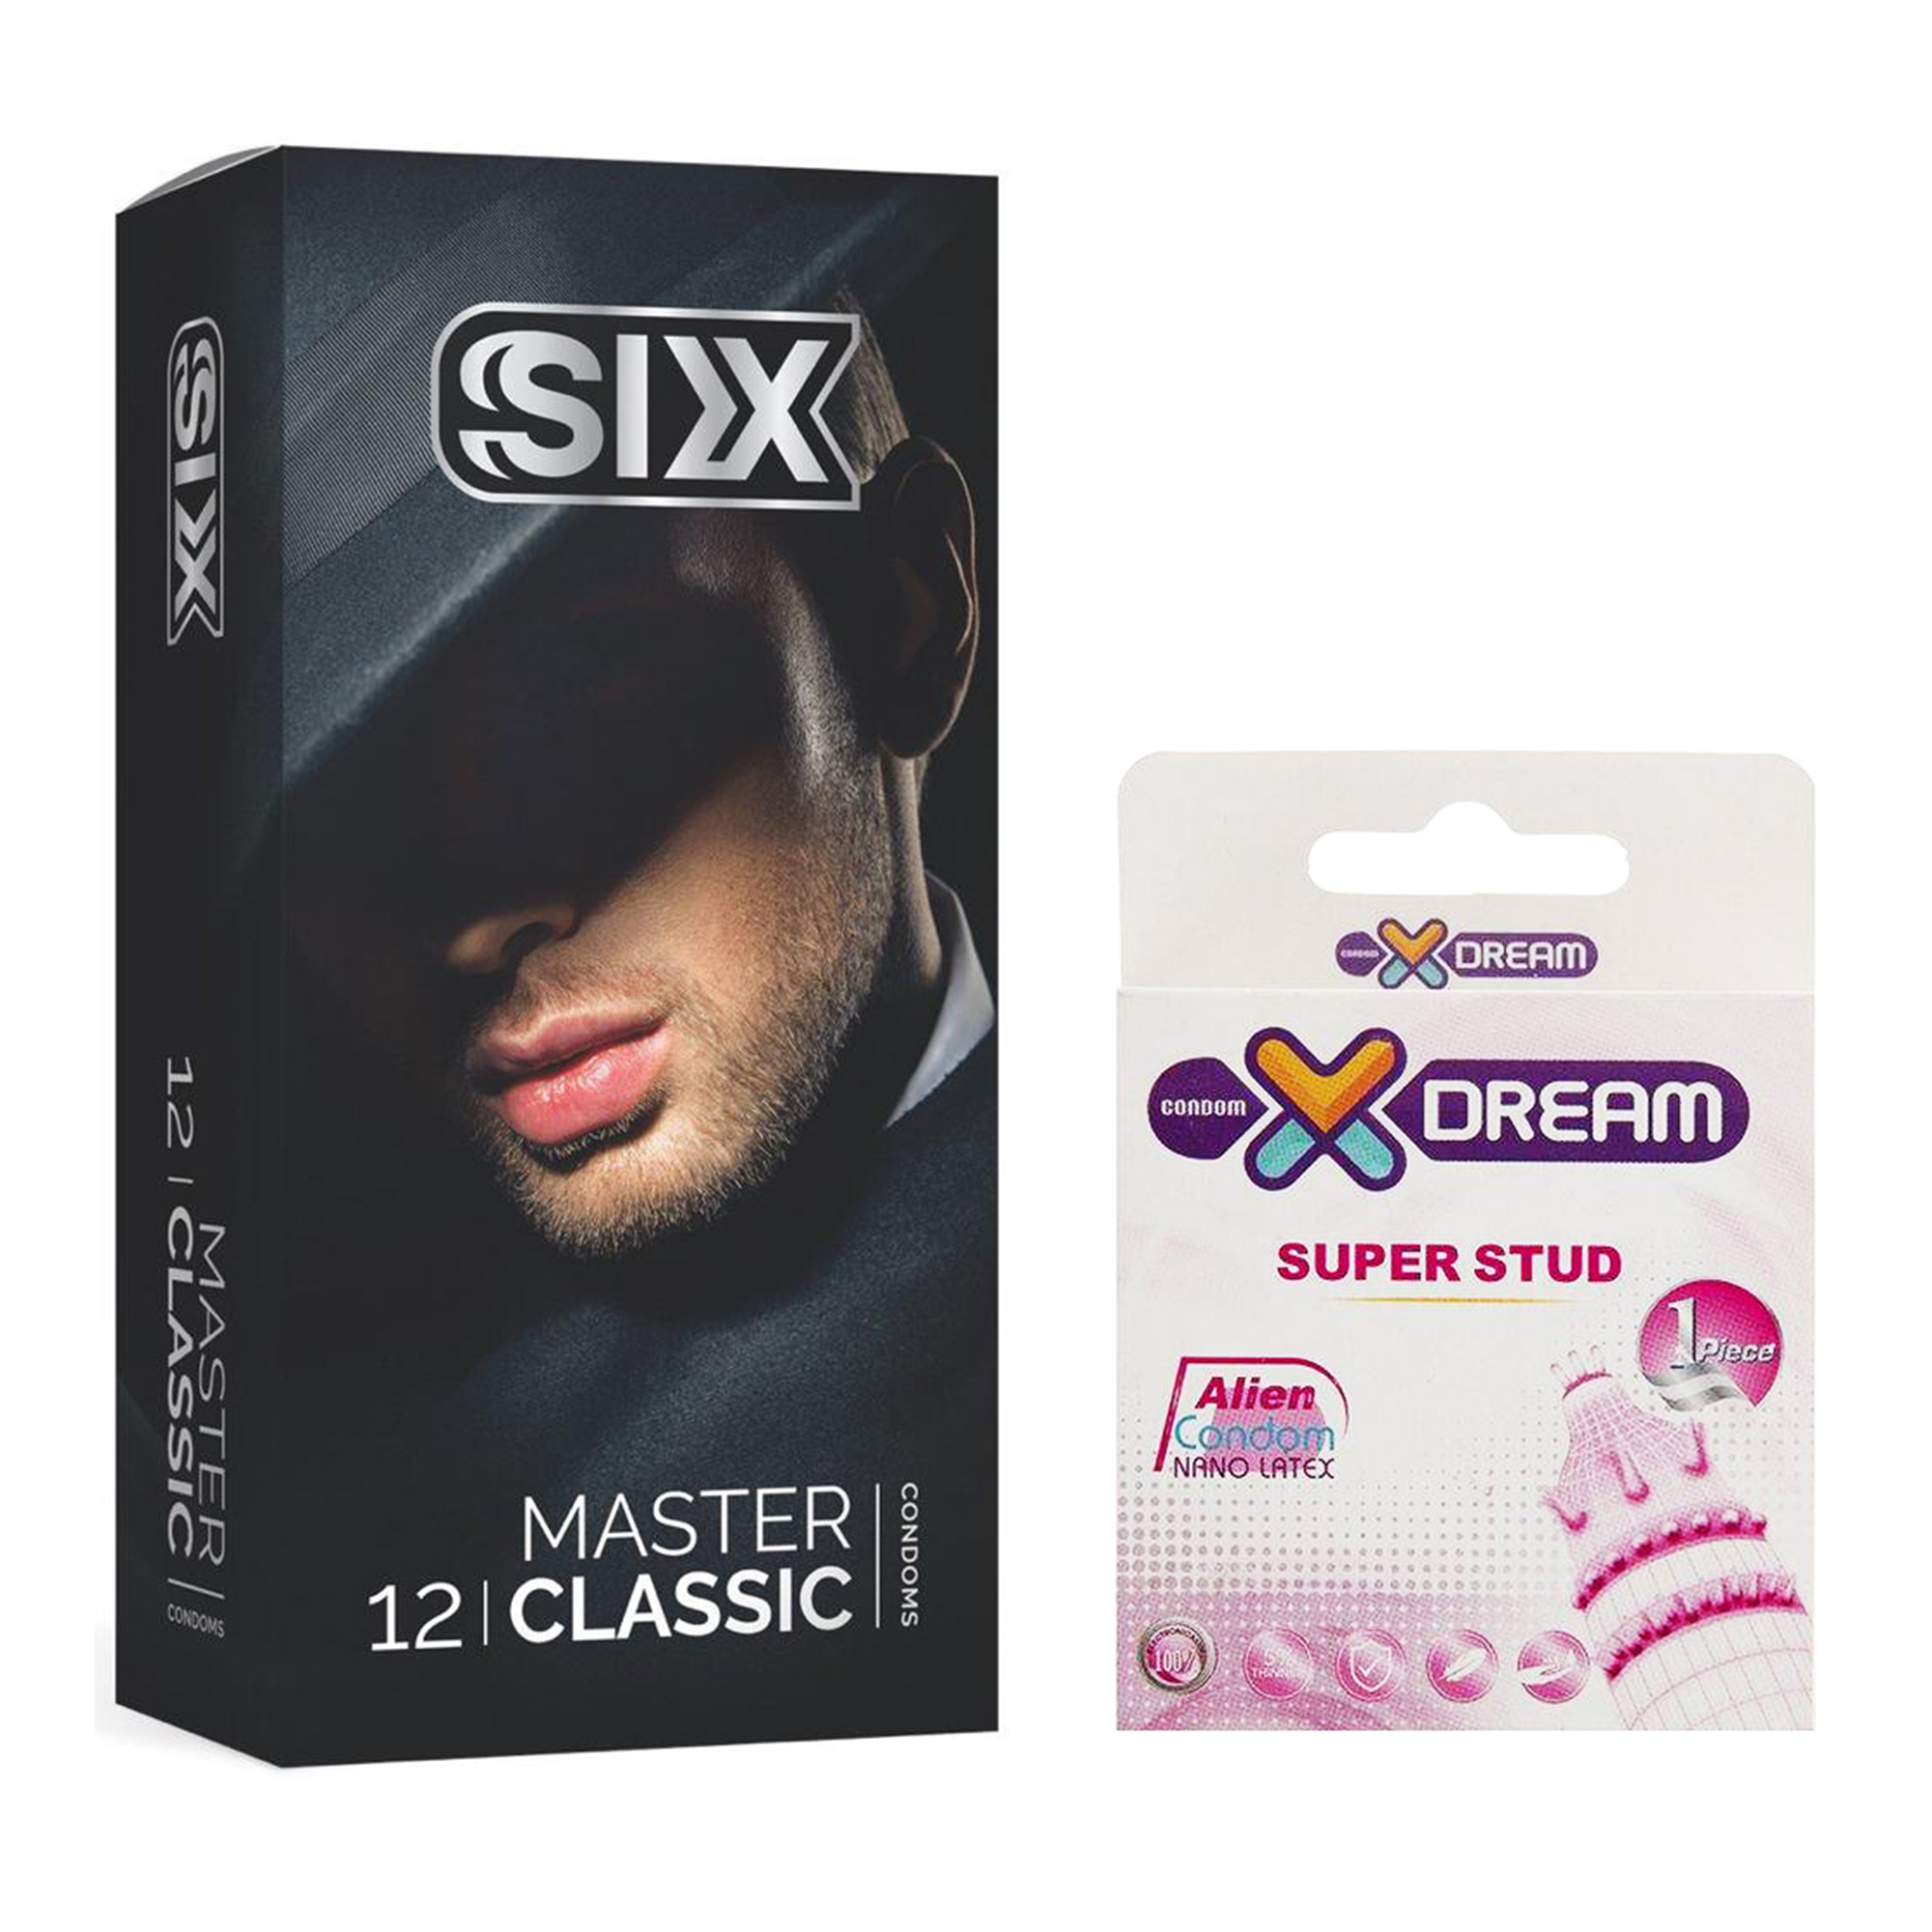 کاندوم سیکس مدل Master Classic بسته 12 عددی به همراه کاندوم ایکس دریم مدل Super Stud